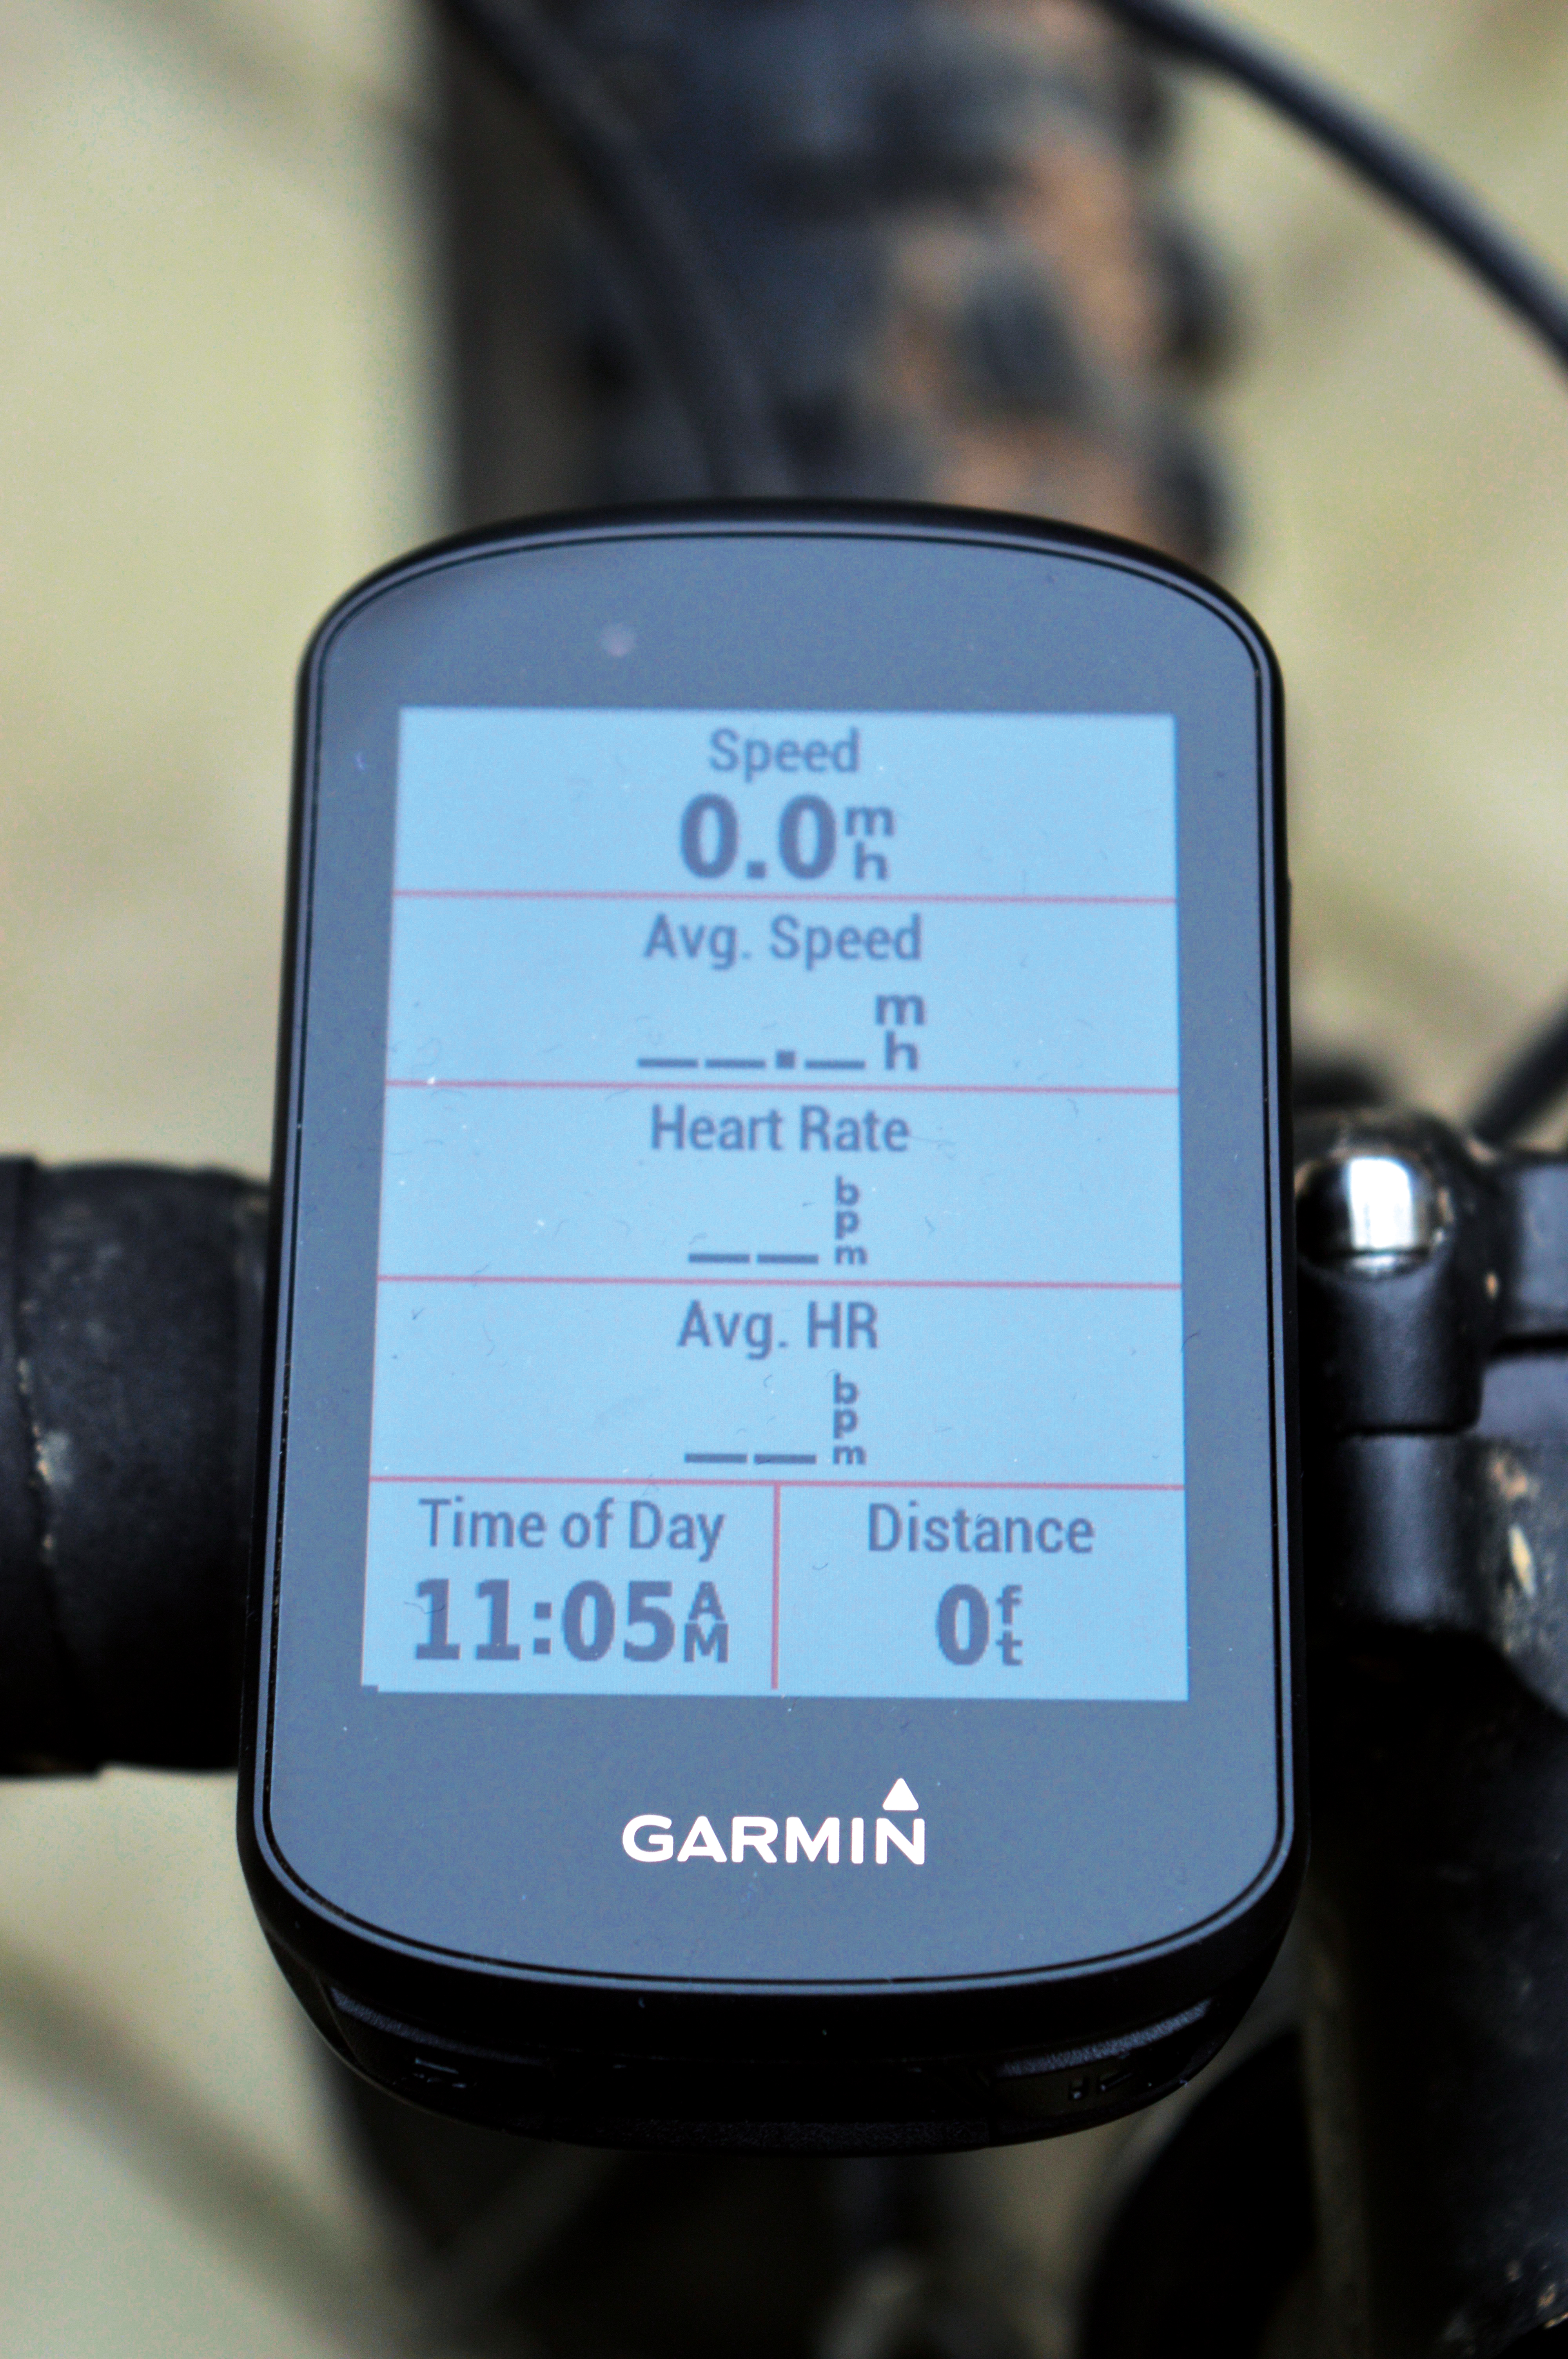 Edge 530 screen visibility - Edge 530 - Cycling - Garmin Forums